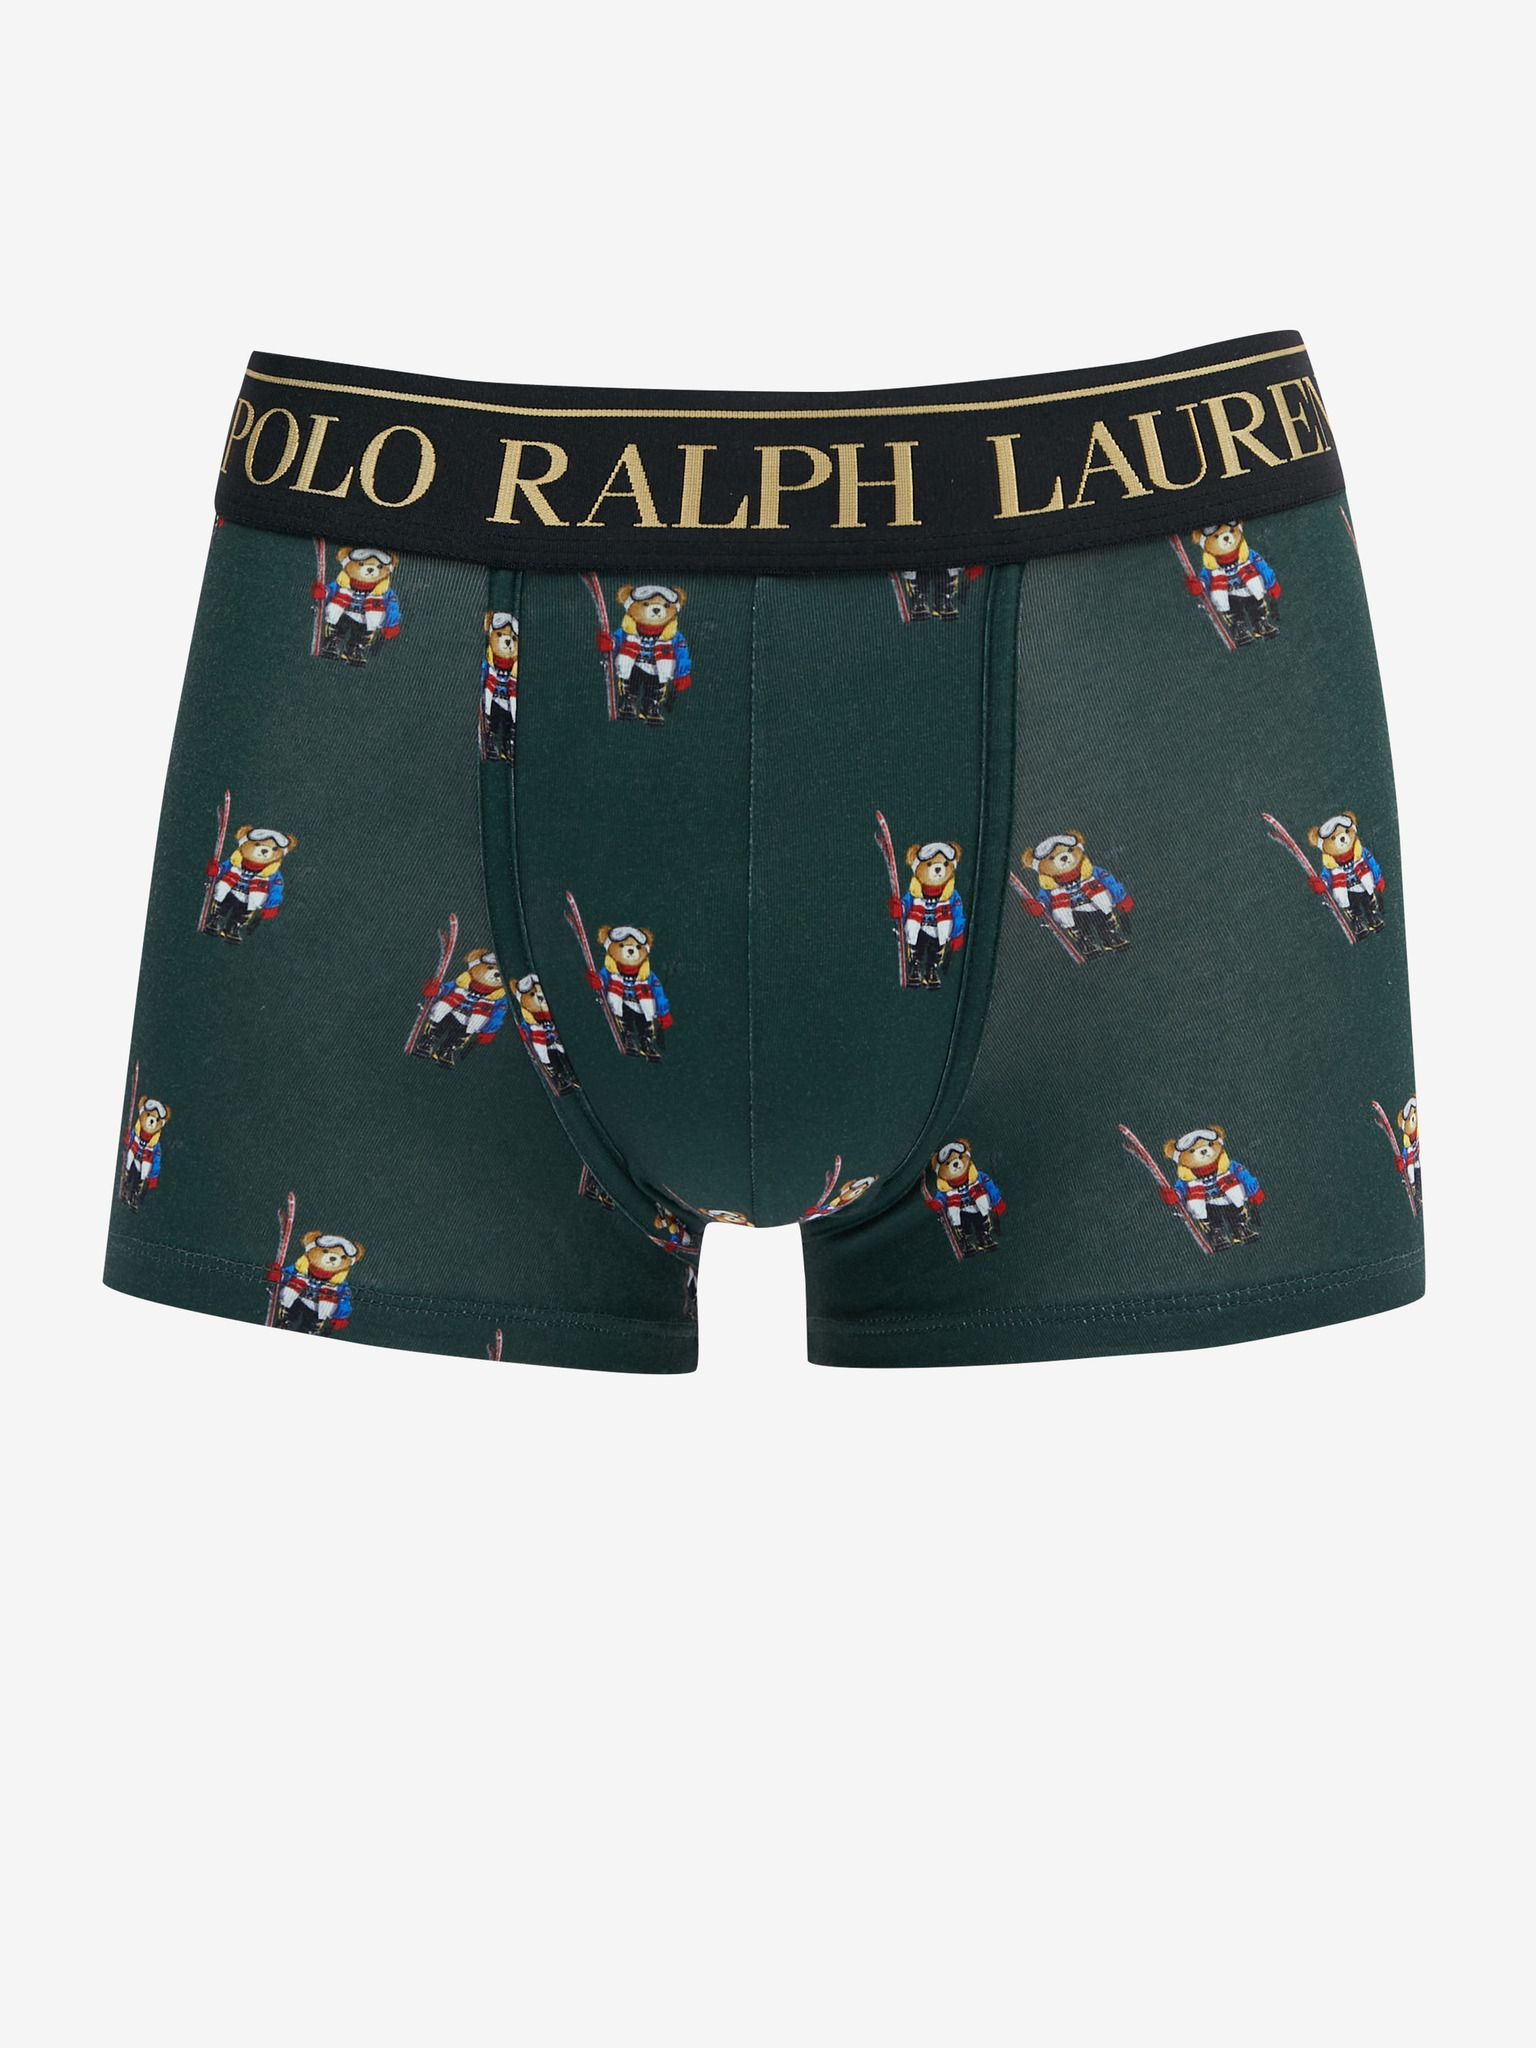 Polo Ralph Lauren - Boxers 2 pcs